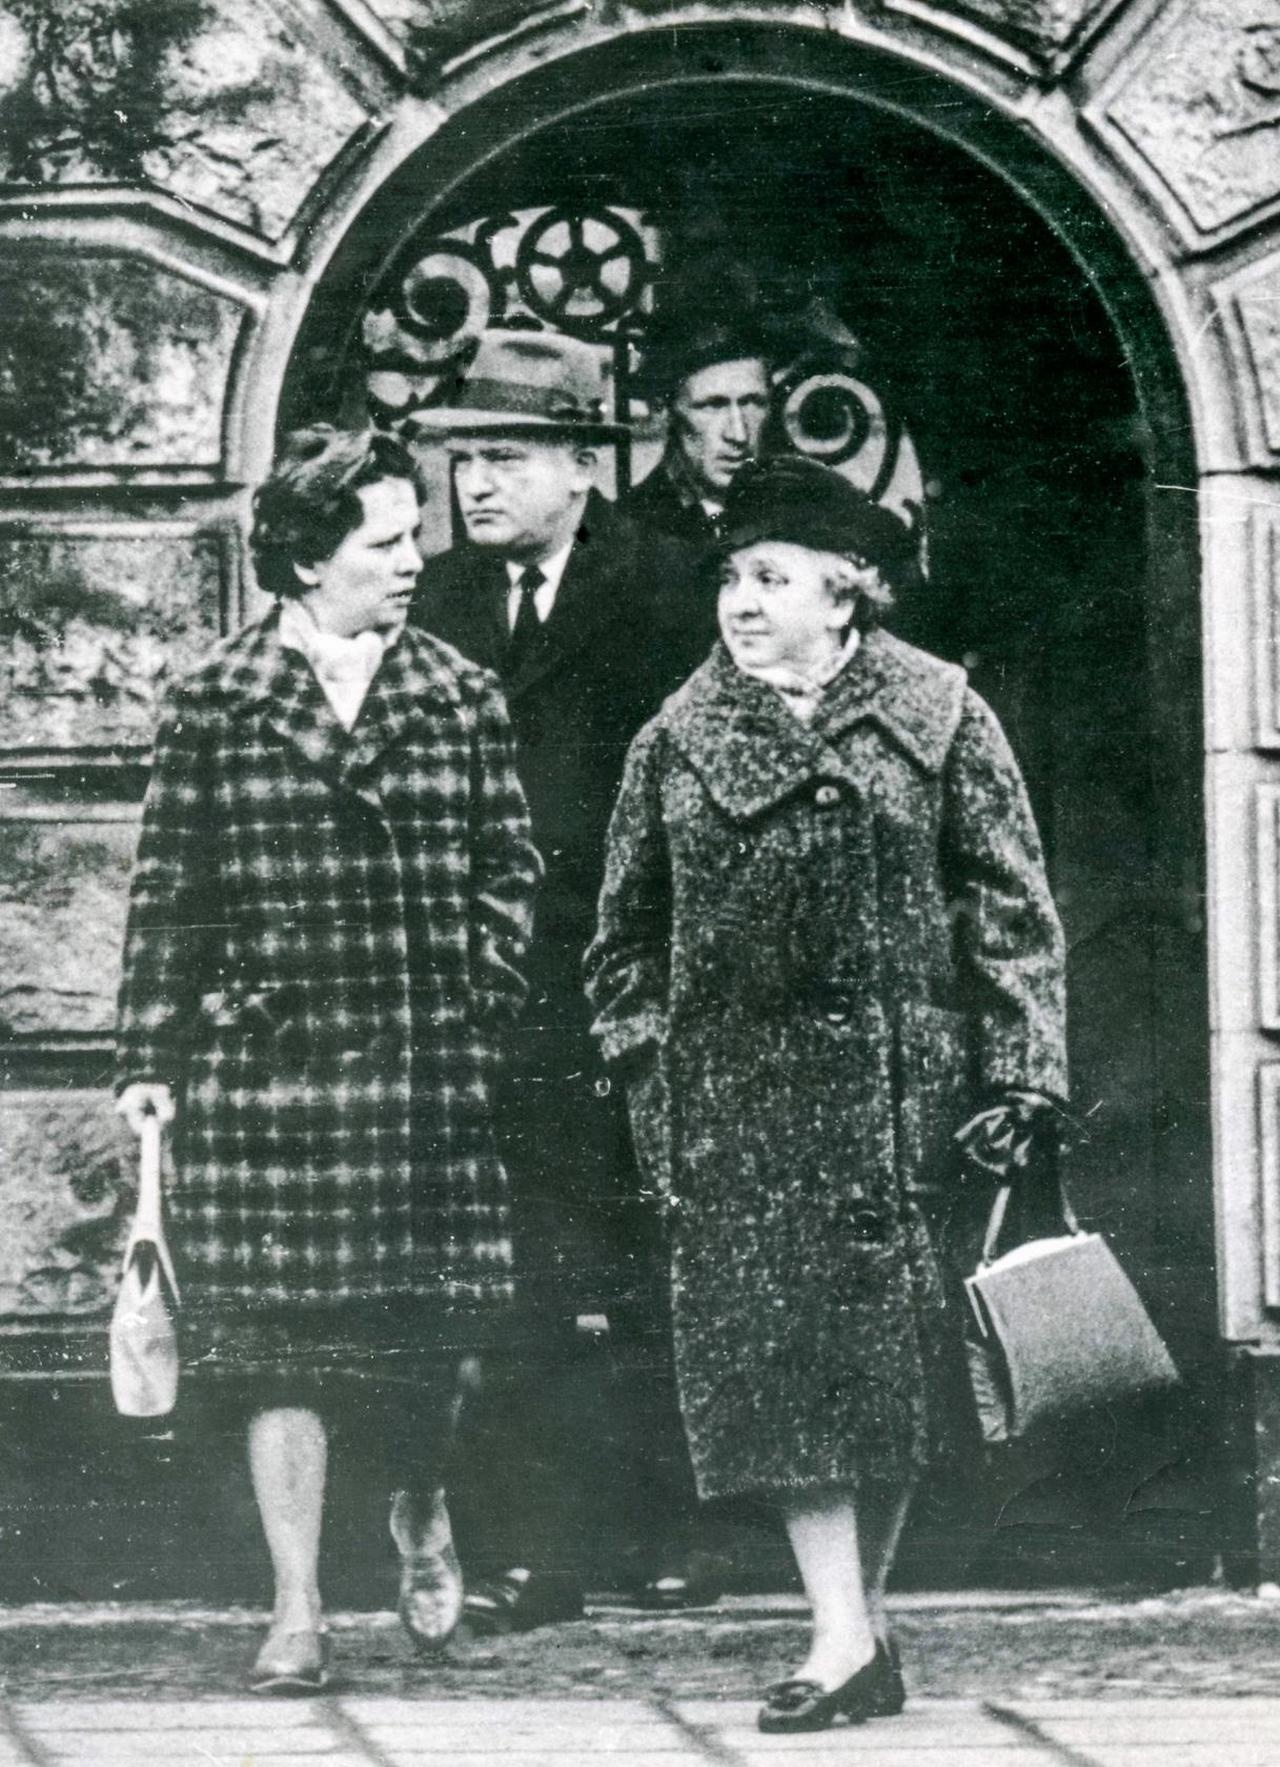 За сутки до обмена Р.И. Абеля на Пауэрса. На снимке (слева направо): Эвелин - дочь Абеля, Дж.Б. Донован - адвокат Абеля, Ю.И. Дроздов (он же Юрген Дривс), супруга Абеля - Е.М.Фишер. 1962 г.